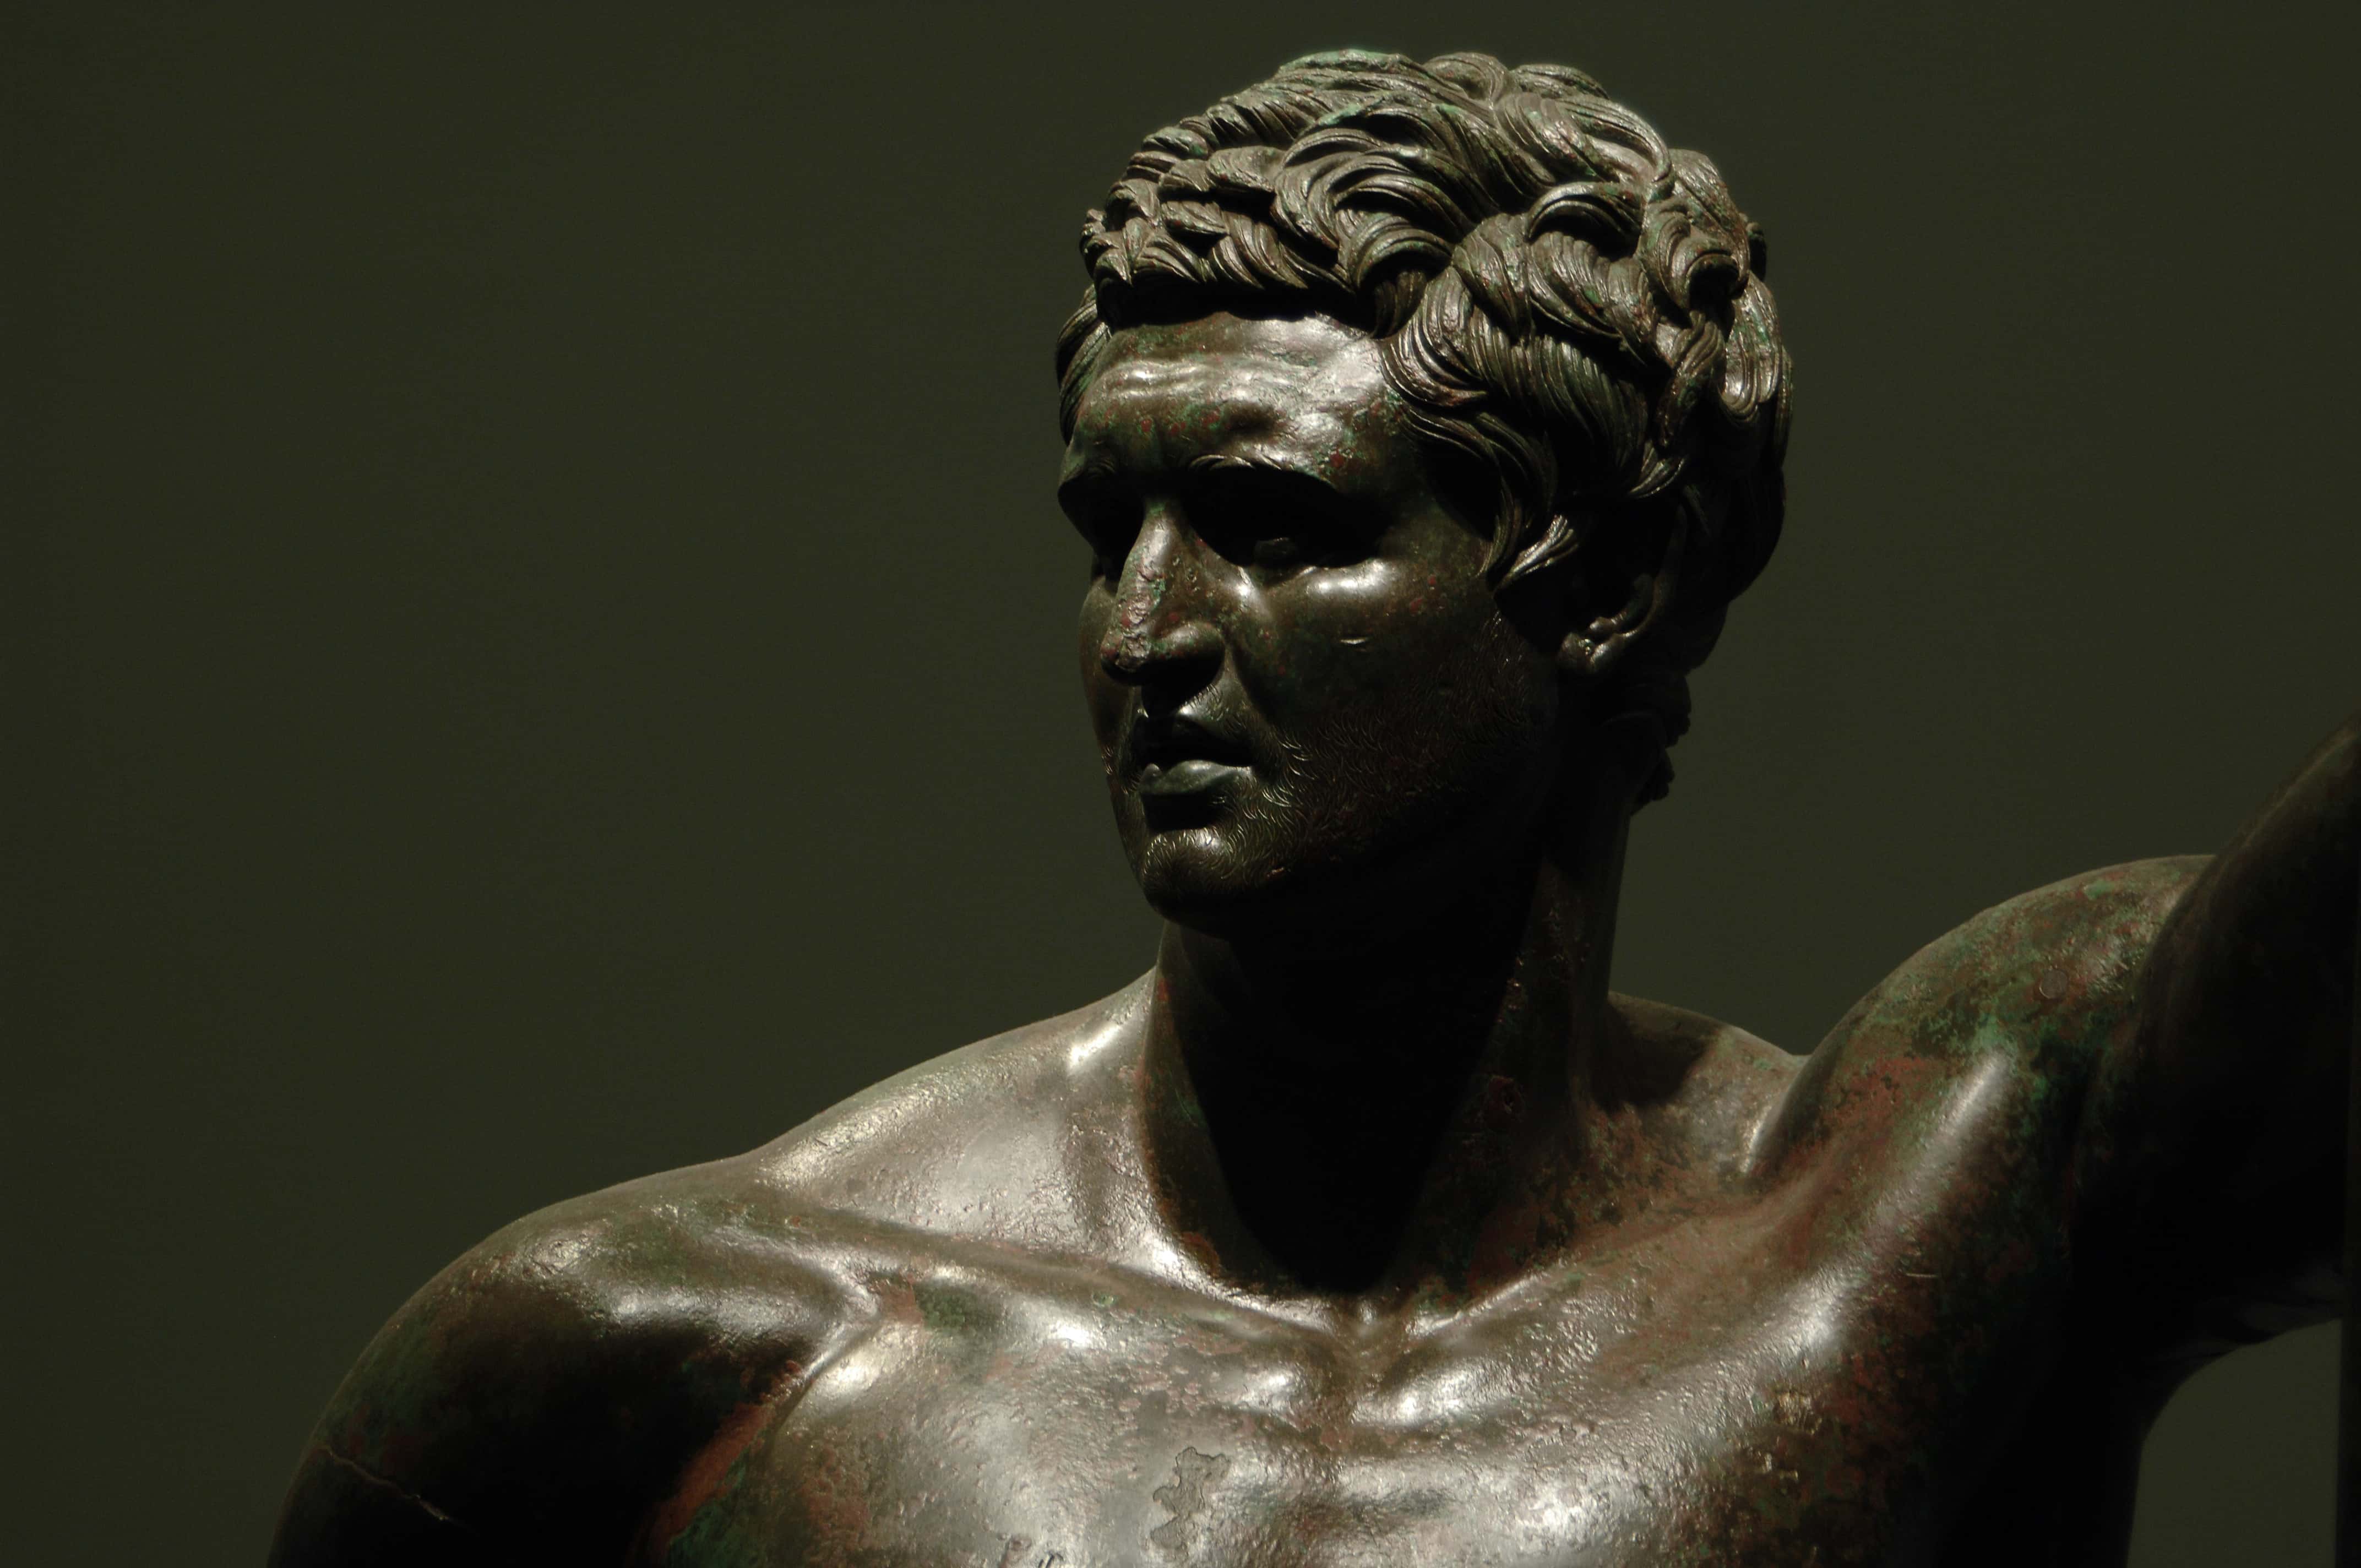 Hellenistic prince represented in heroic nudity